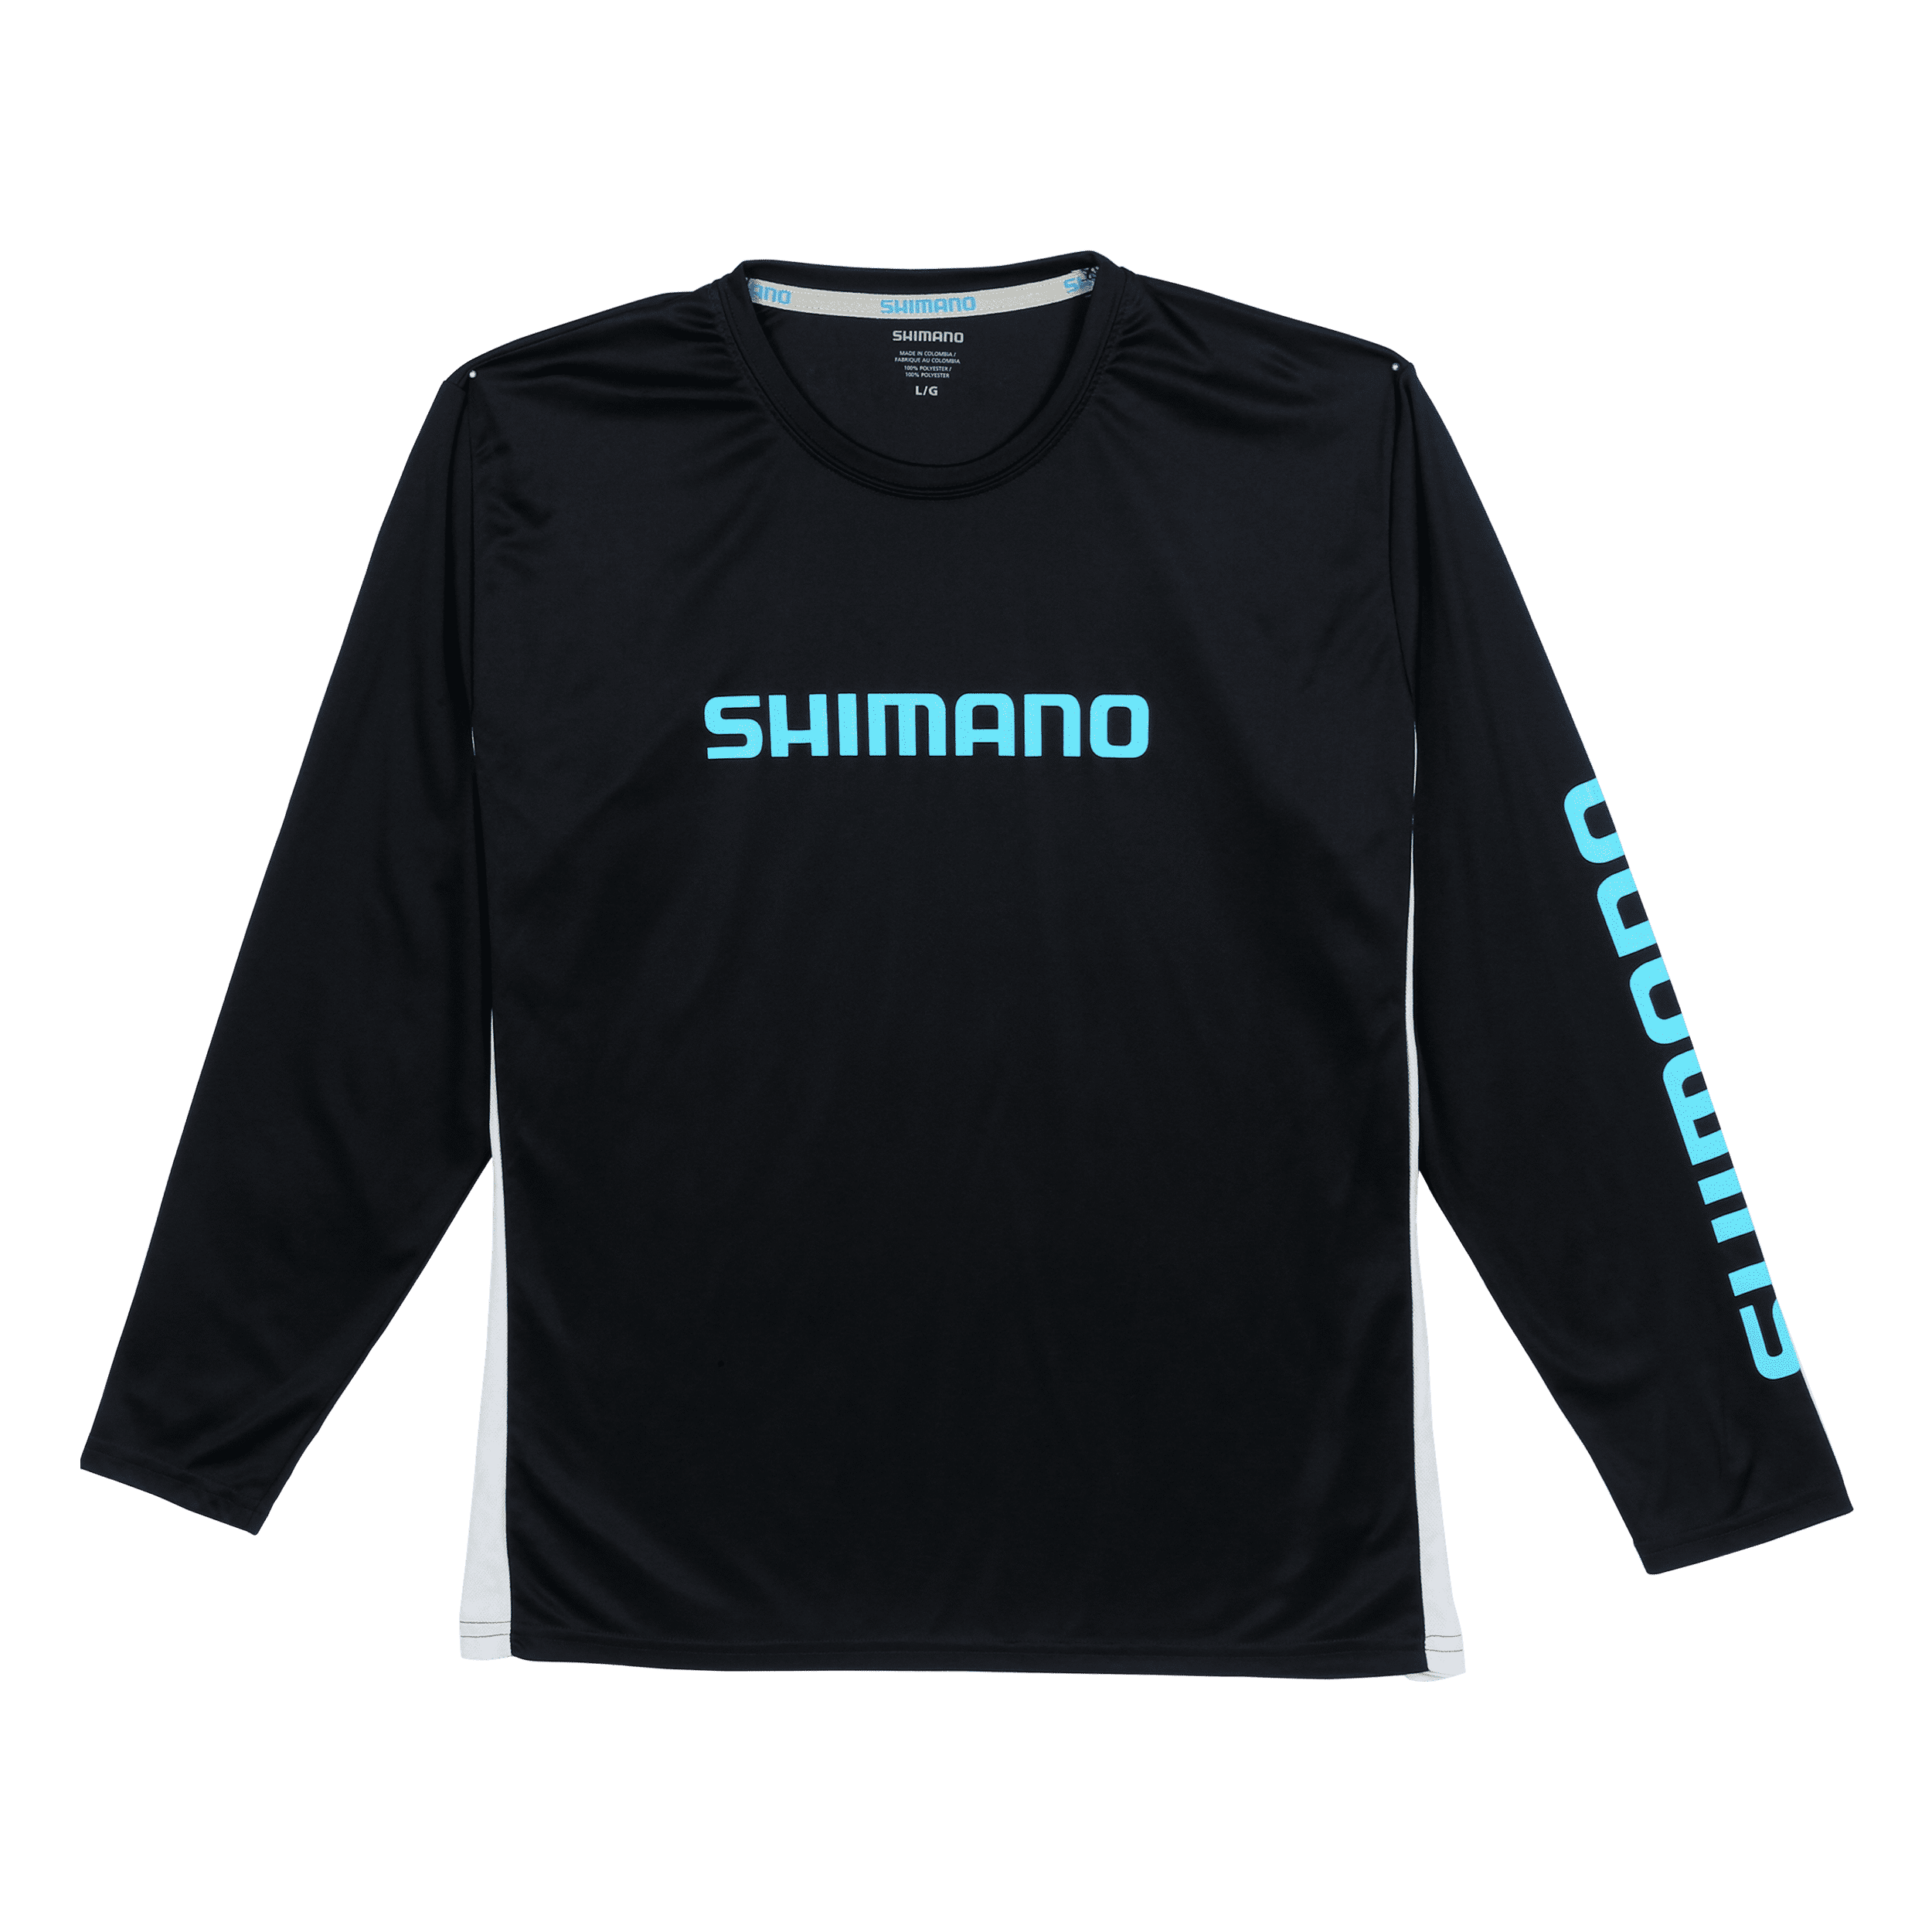 SHIMANO Long Sleeve Tech Tee Fishing Gear Shirts Men